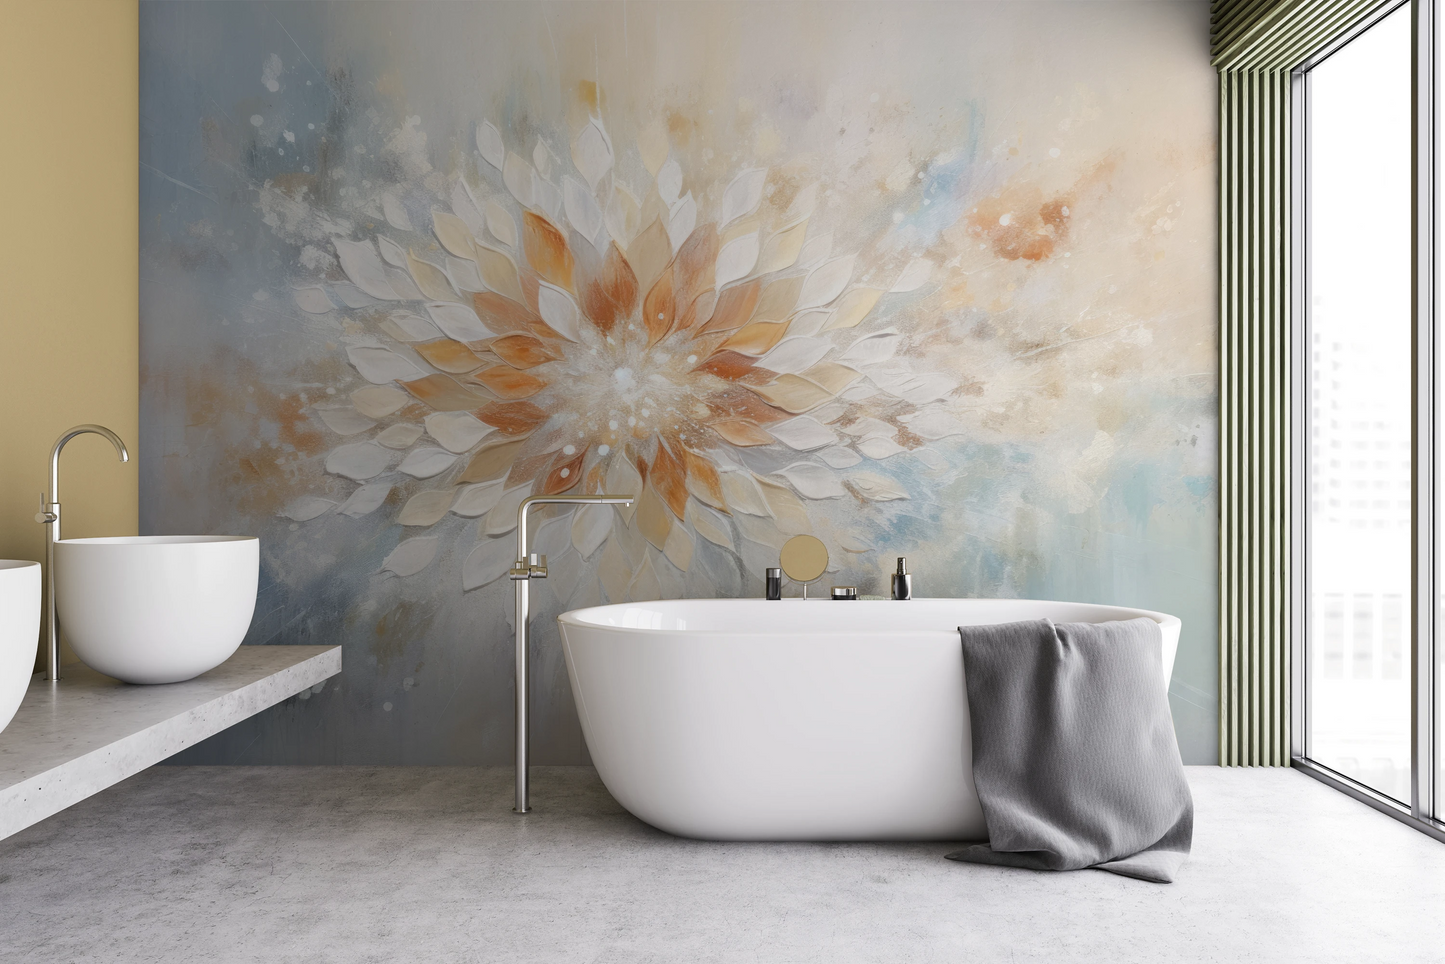 Fototapeta malowana o nazwie Serene Lotus pokazana w aranżacji wnętrza.